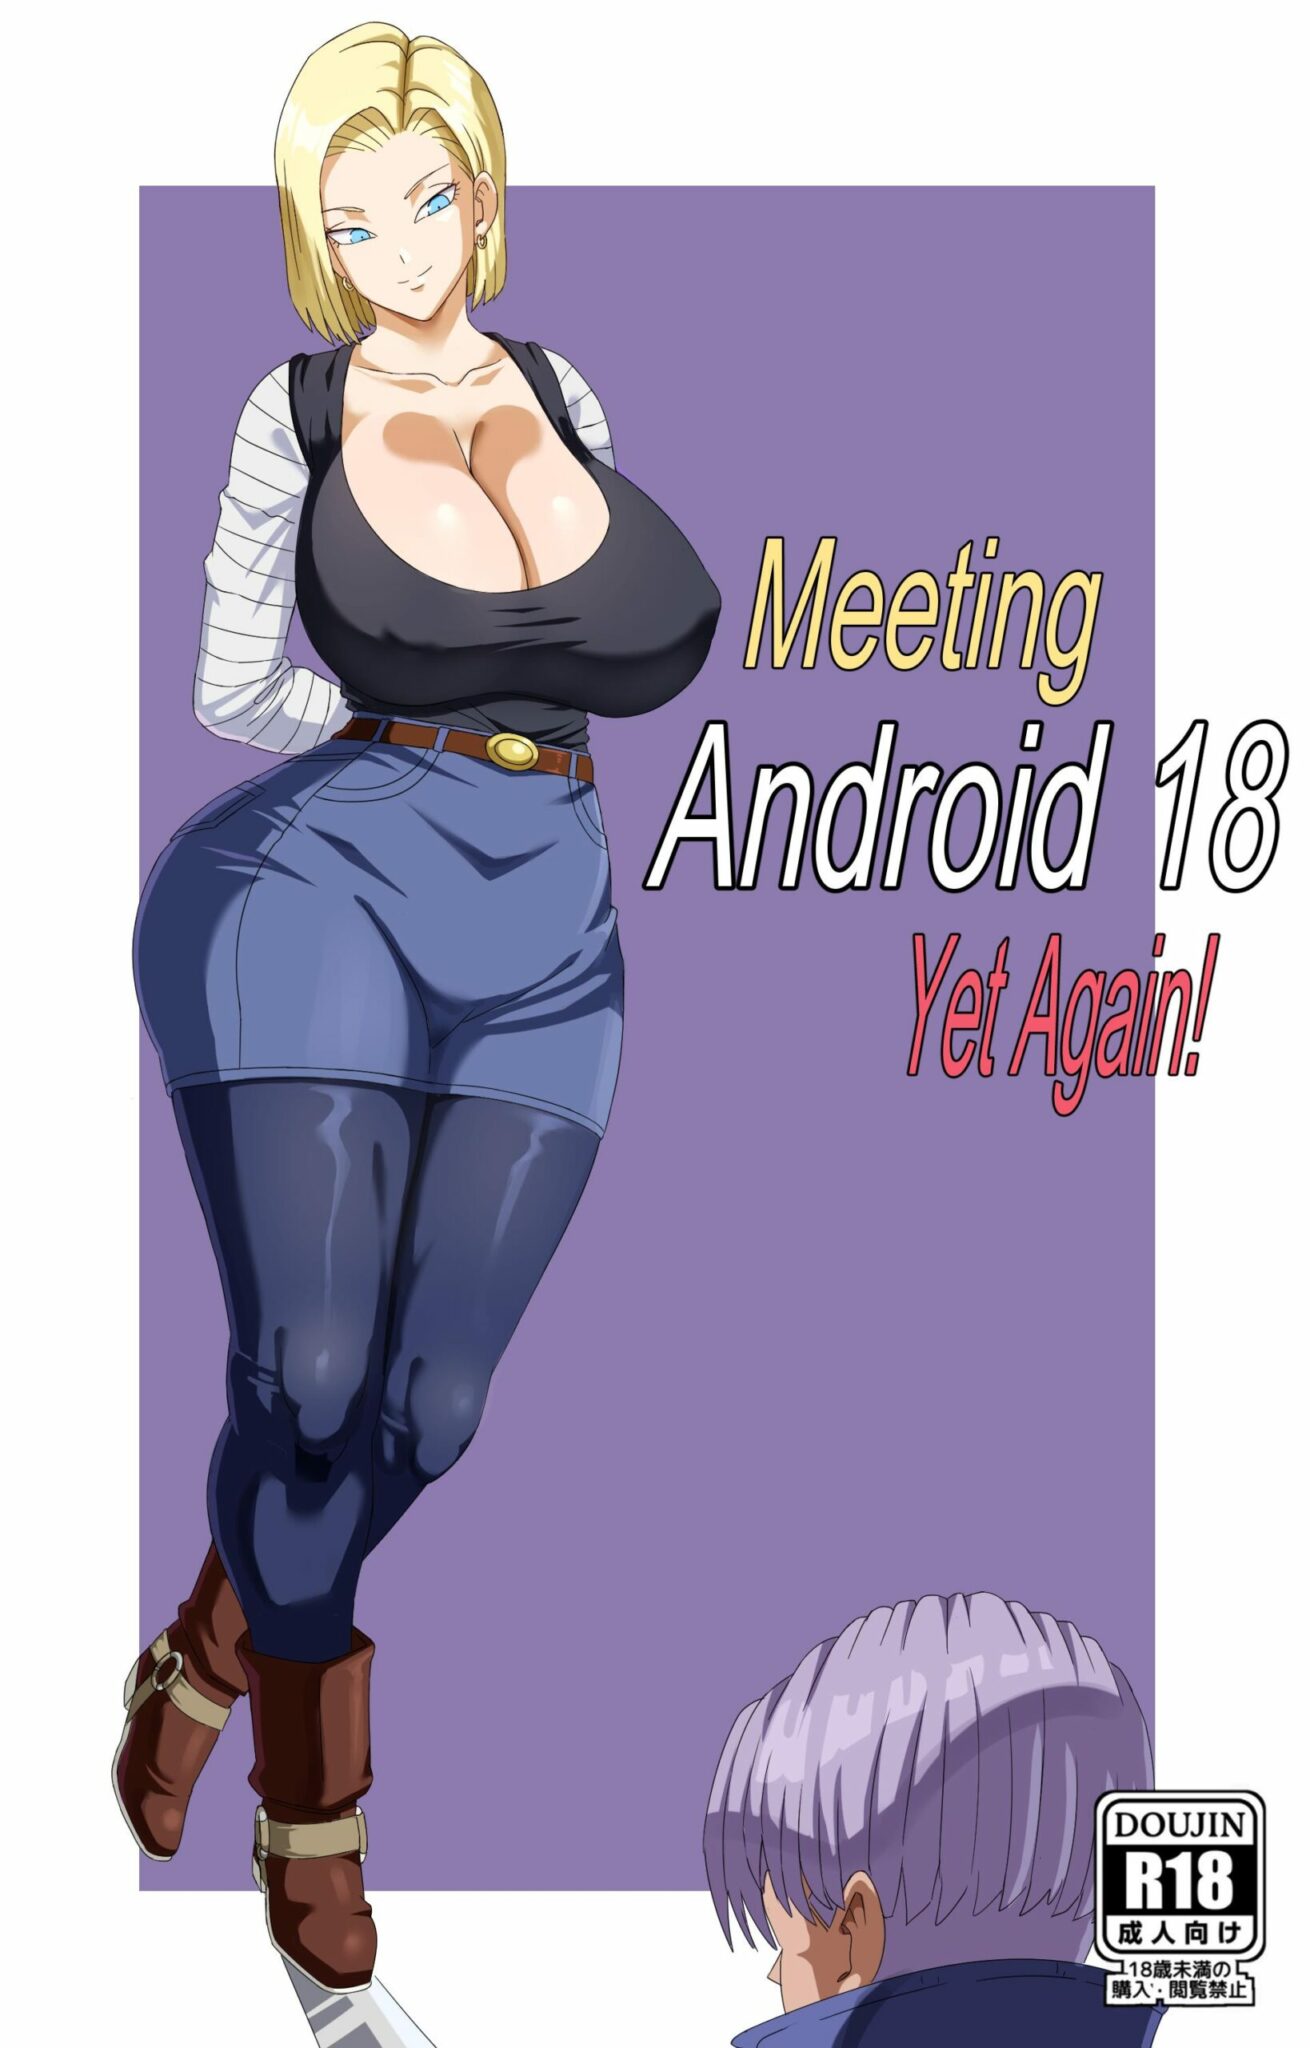 Conhecendo a Android 18, de novo!